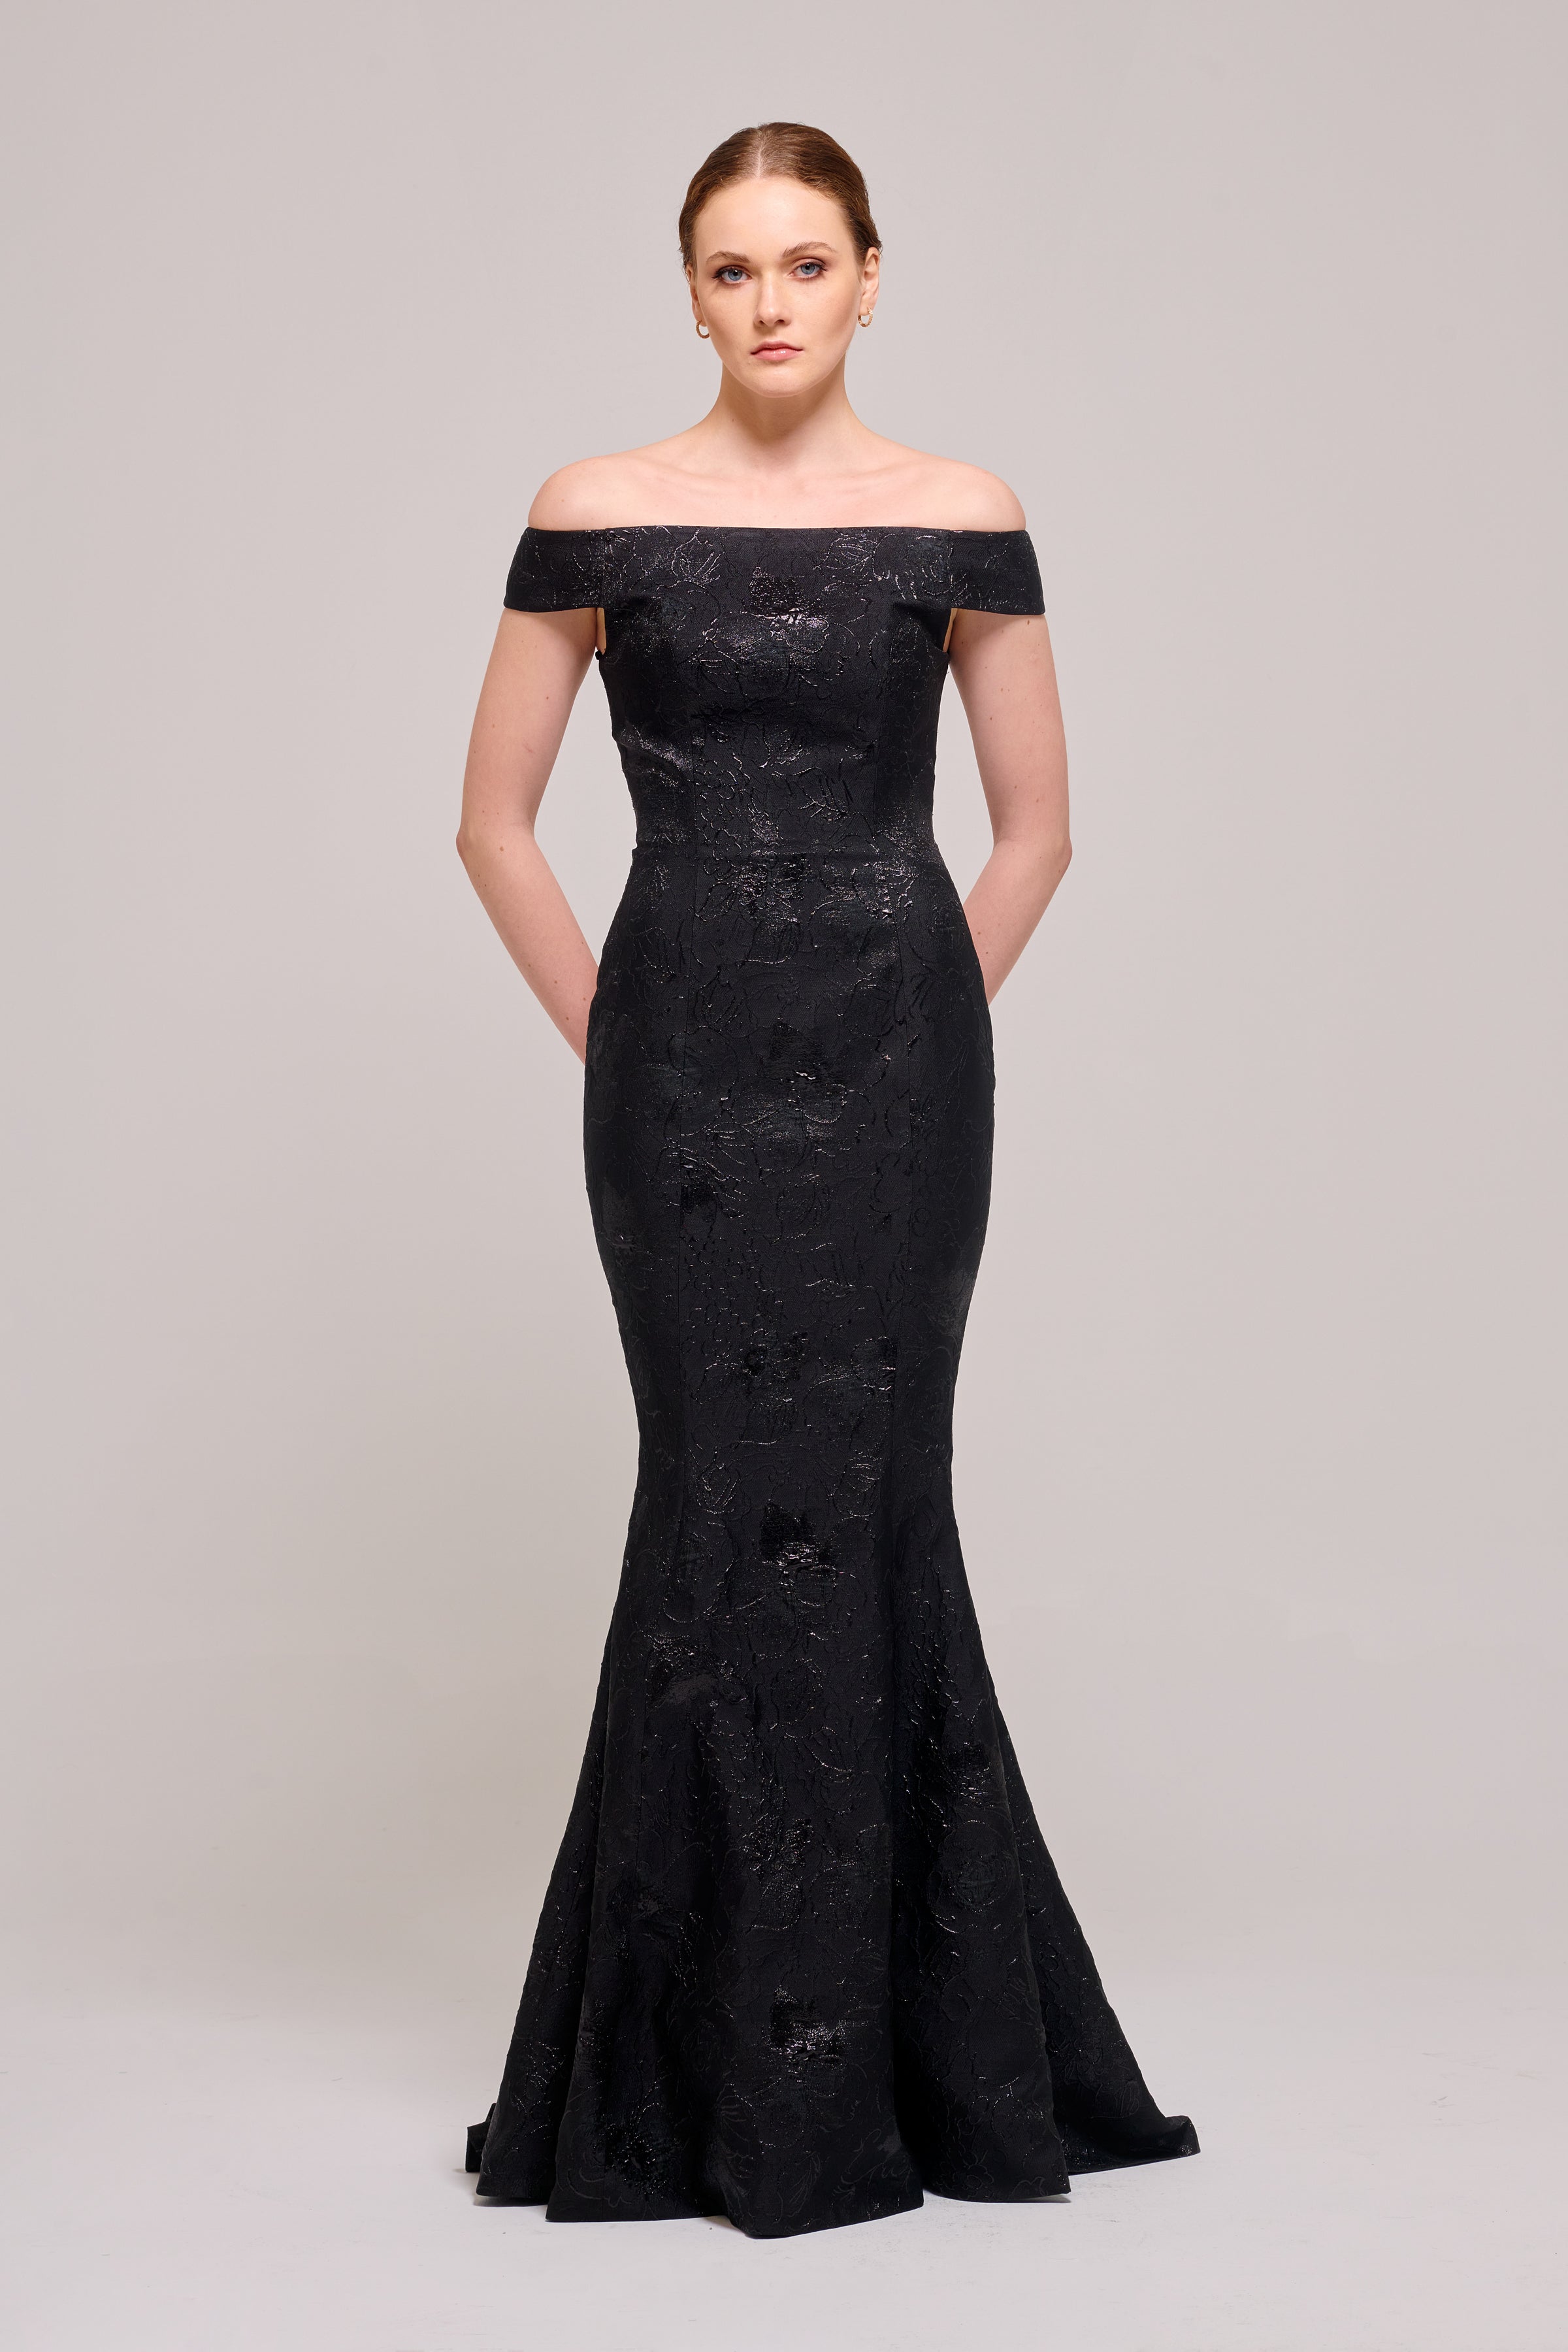 Off-The-Shoulder Long Black Jacquard Dress